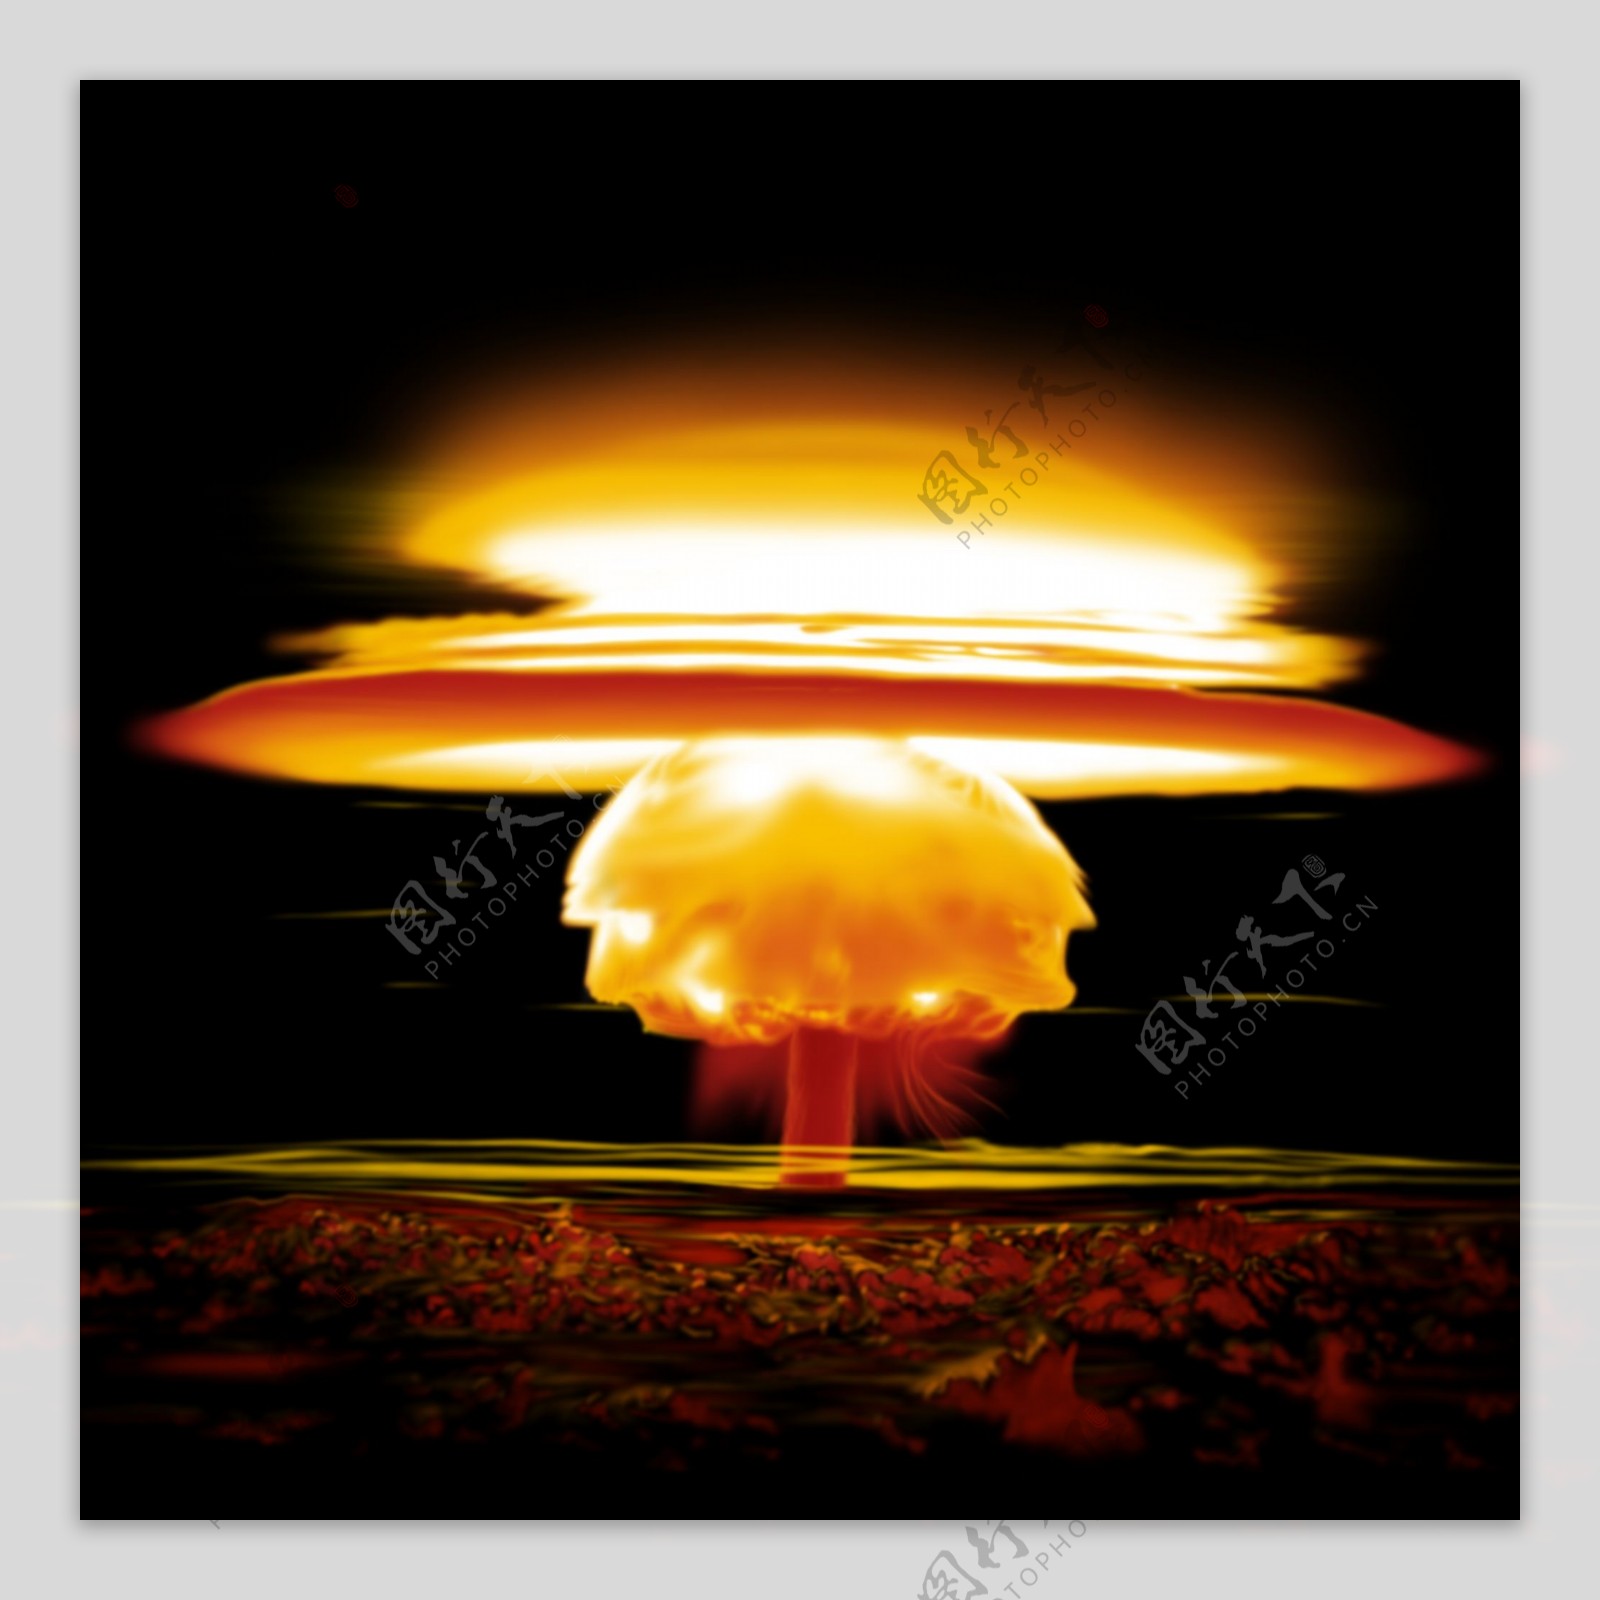 原子弹爆炸后蘑菇云图片